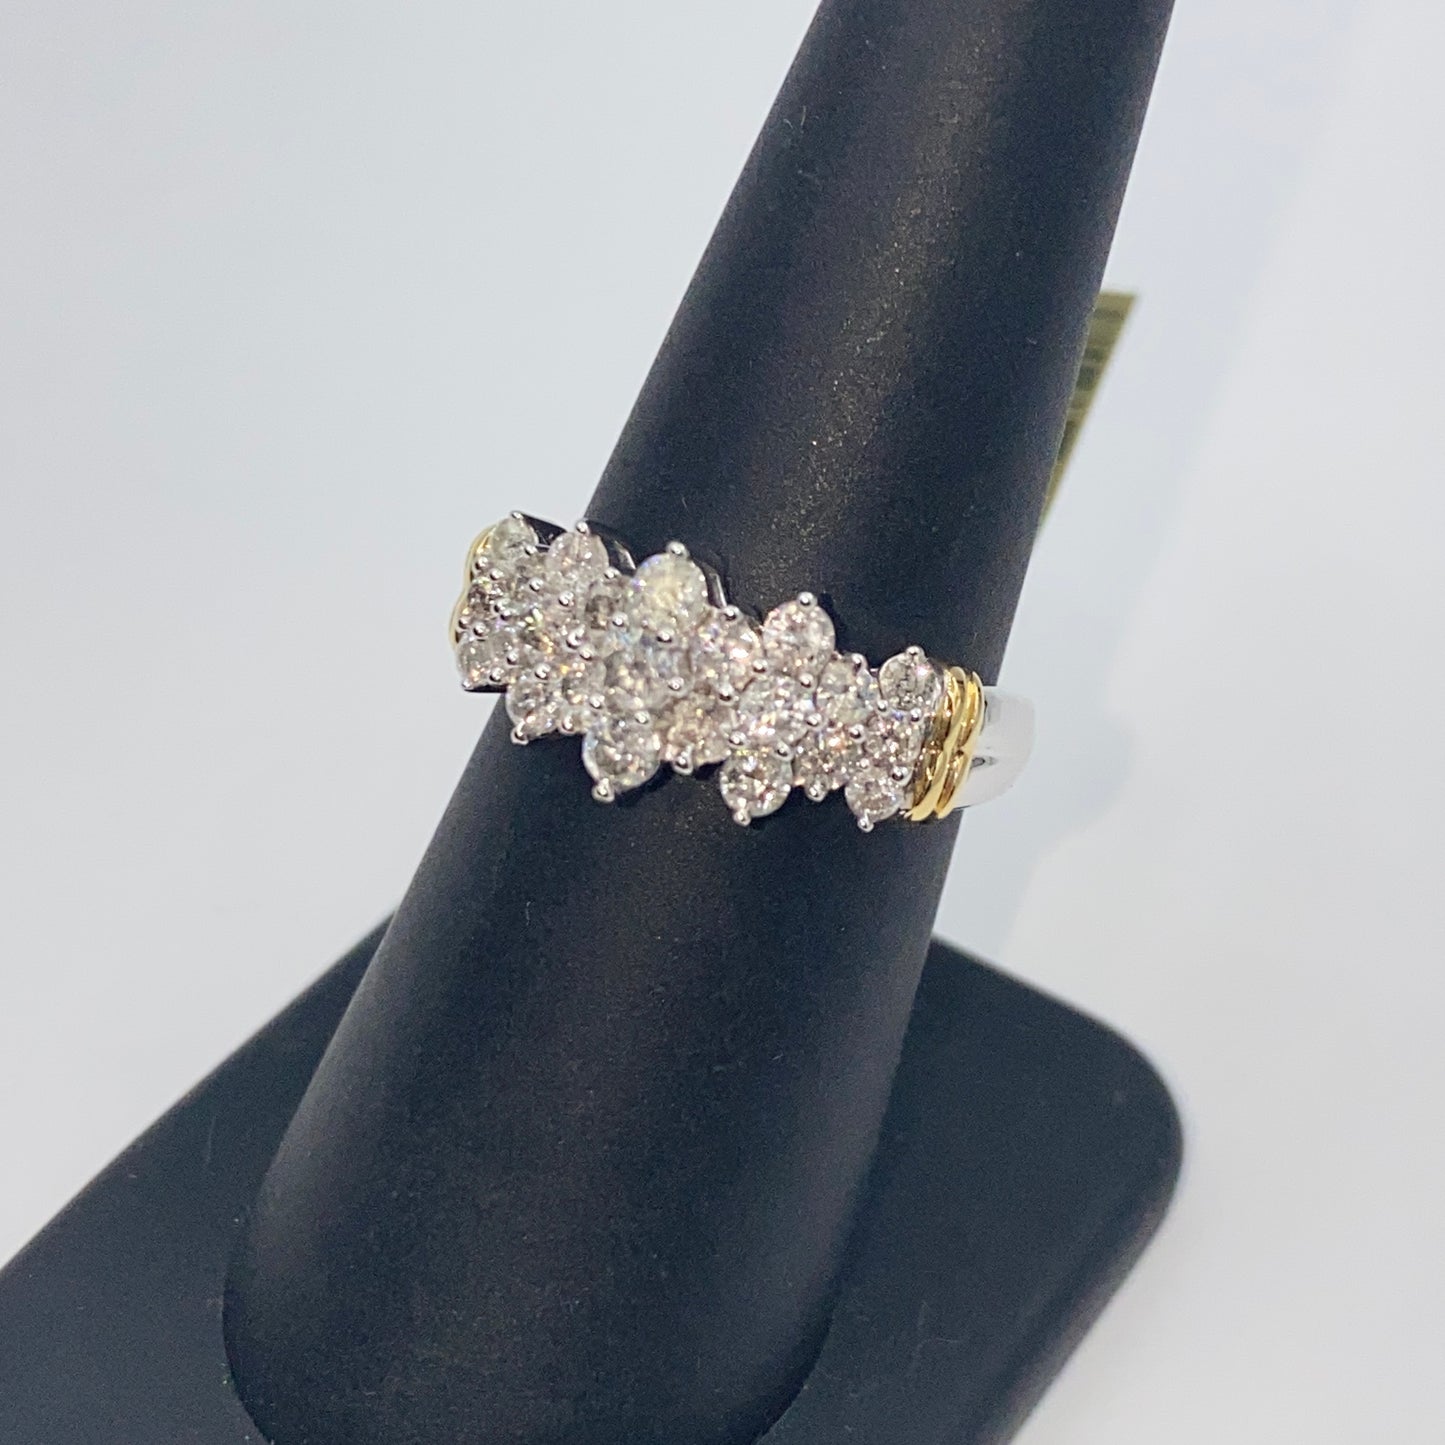 10K Diamond Tiara Two-Tone Engagement Ring